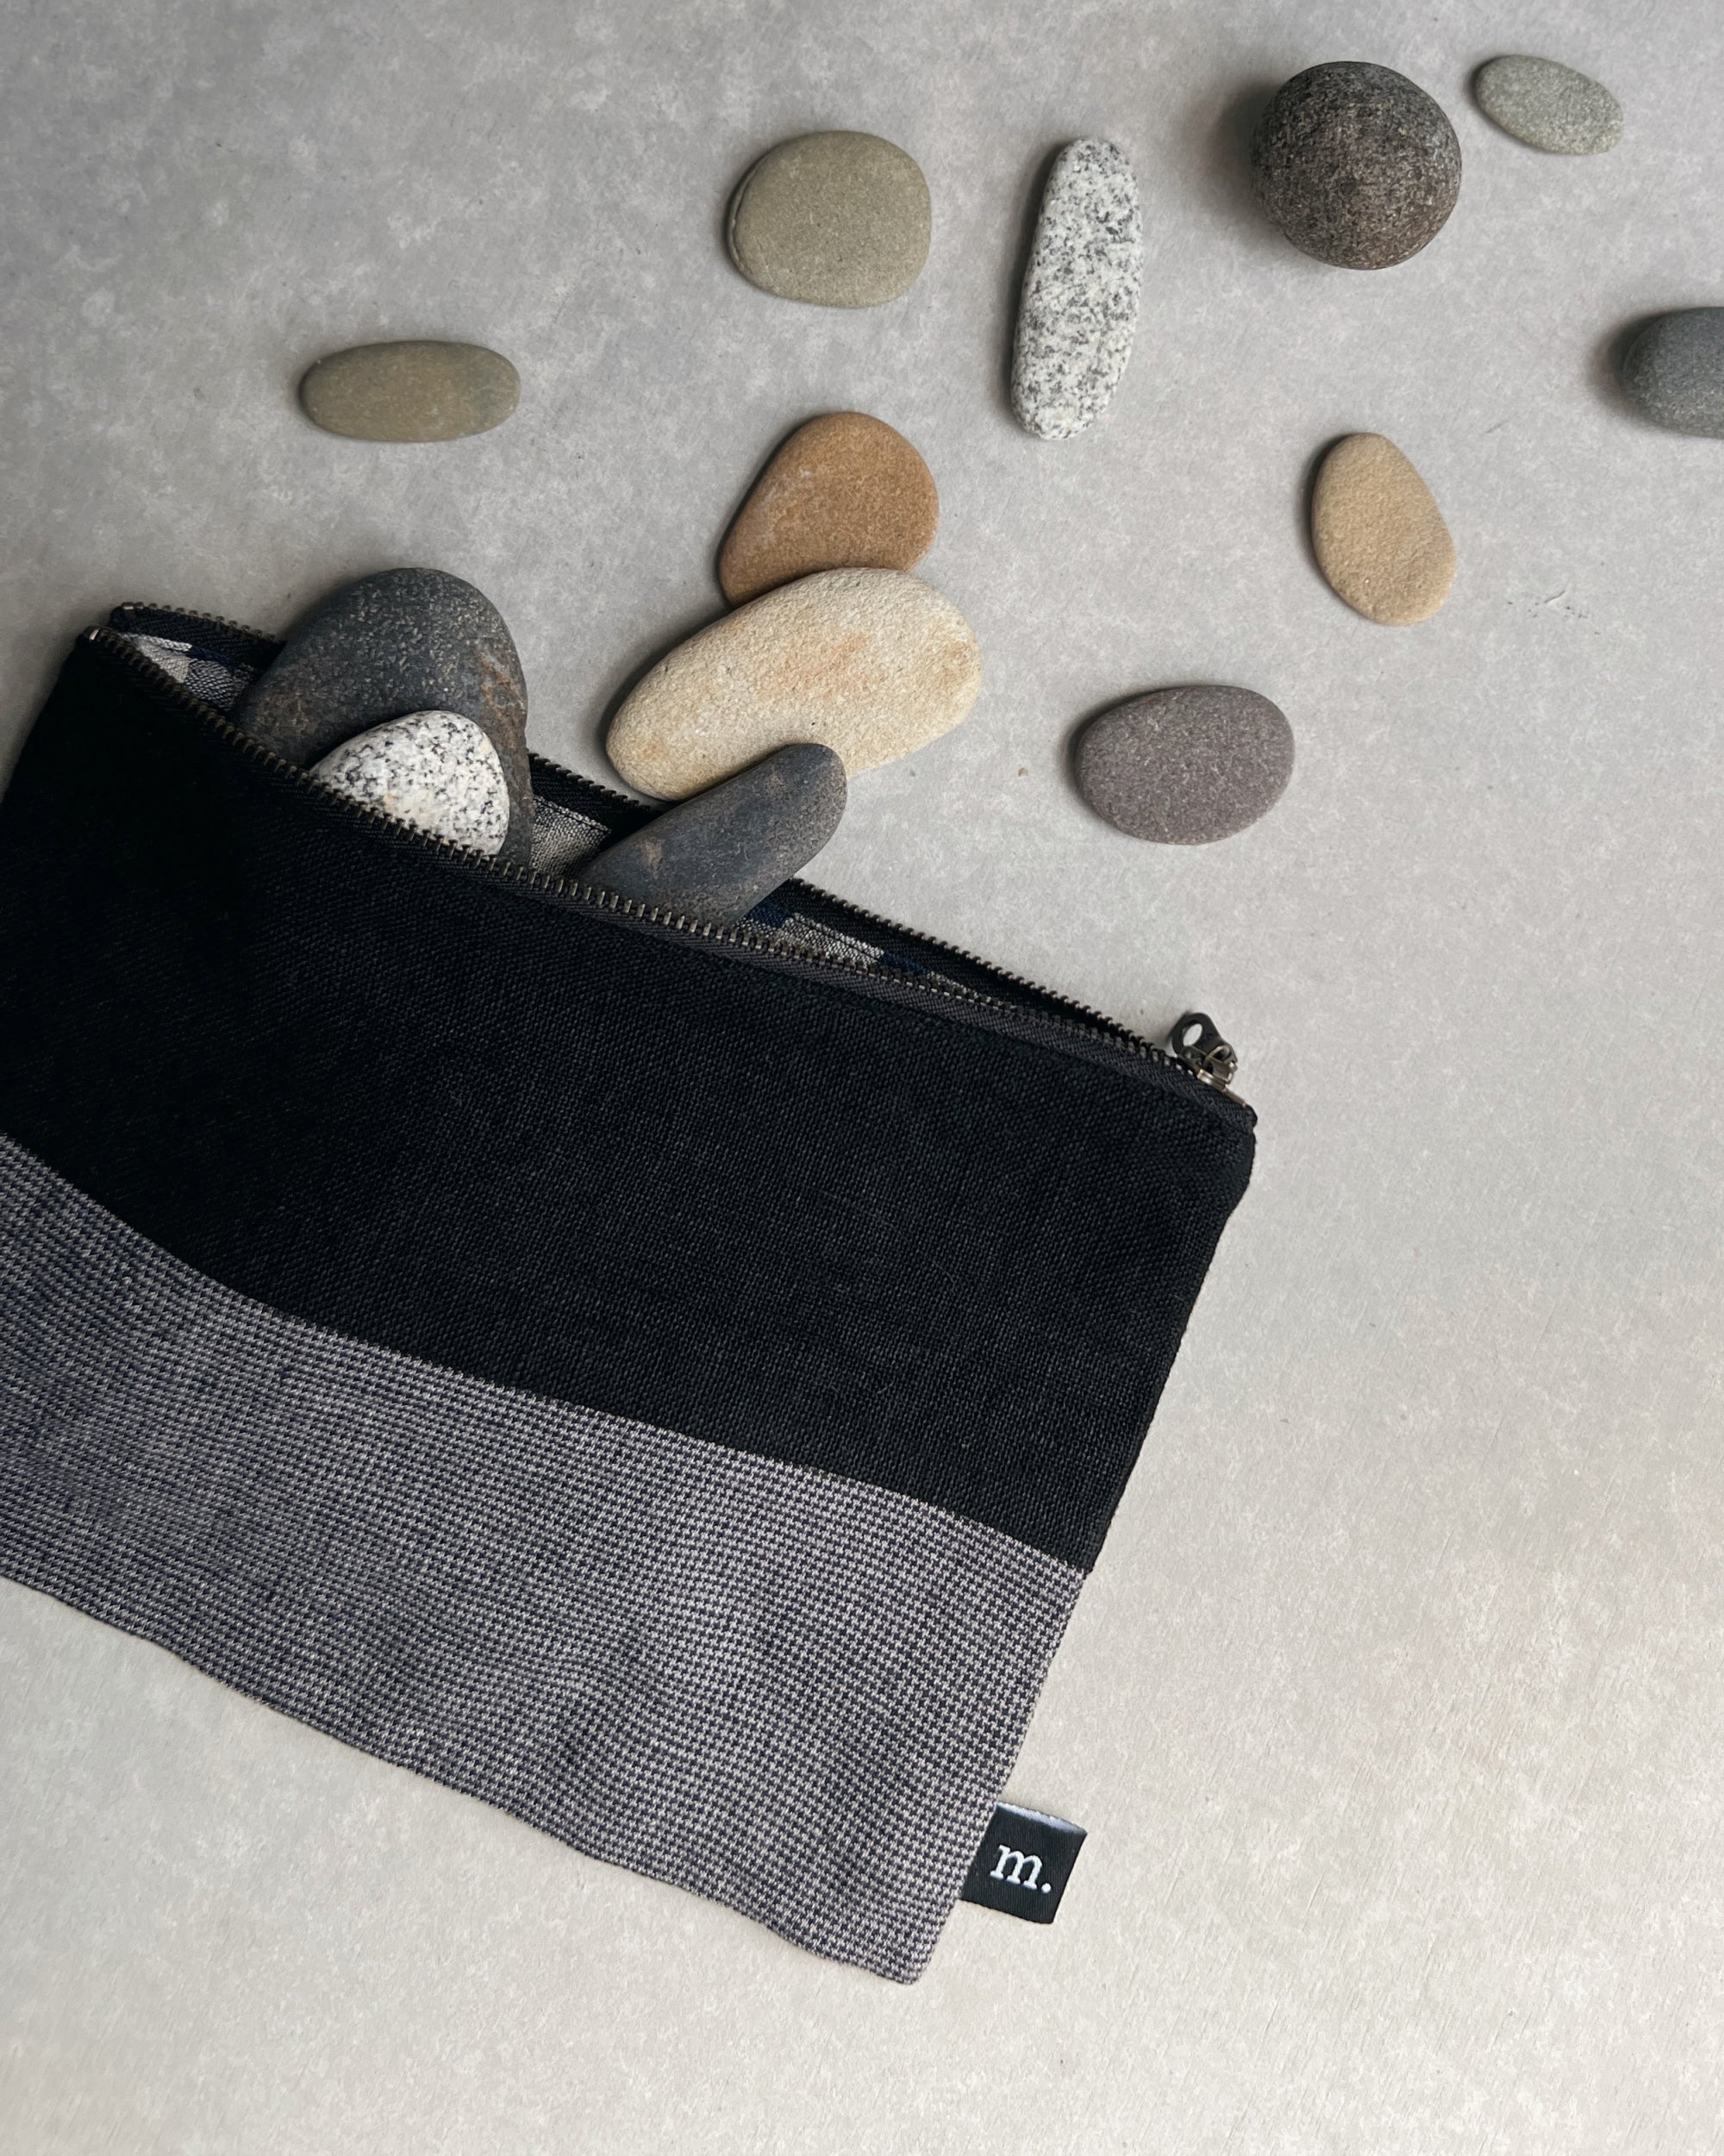 japanese linen purse handmade for the maker hobart